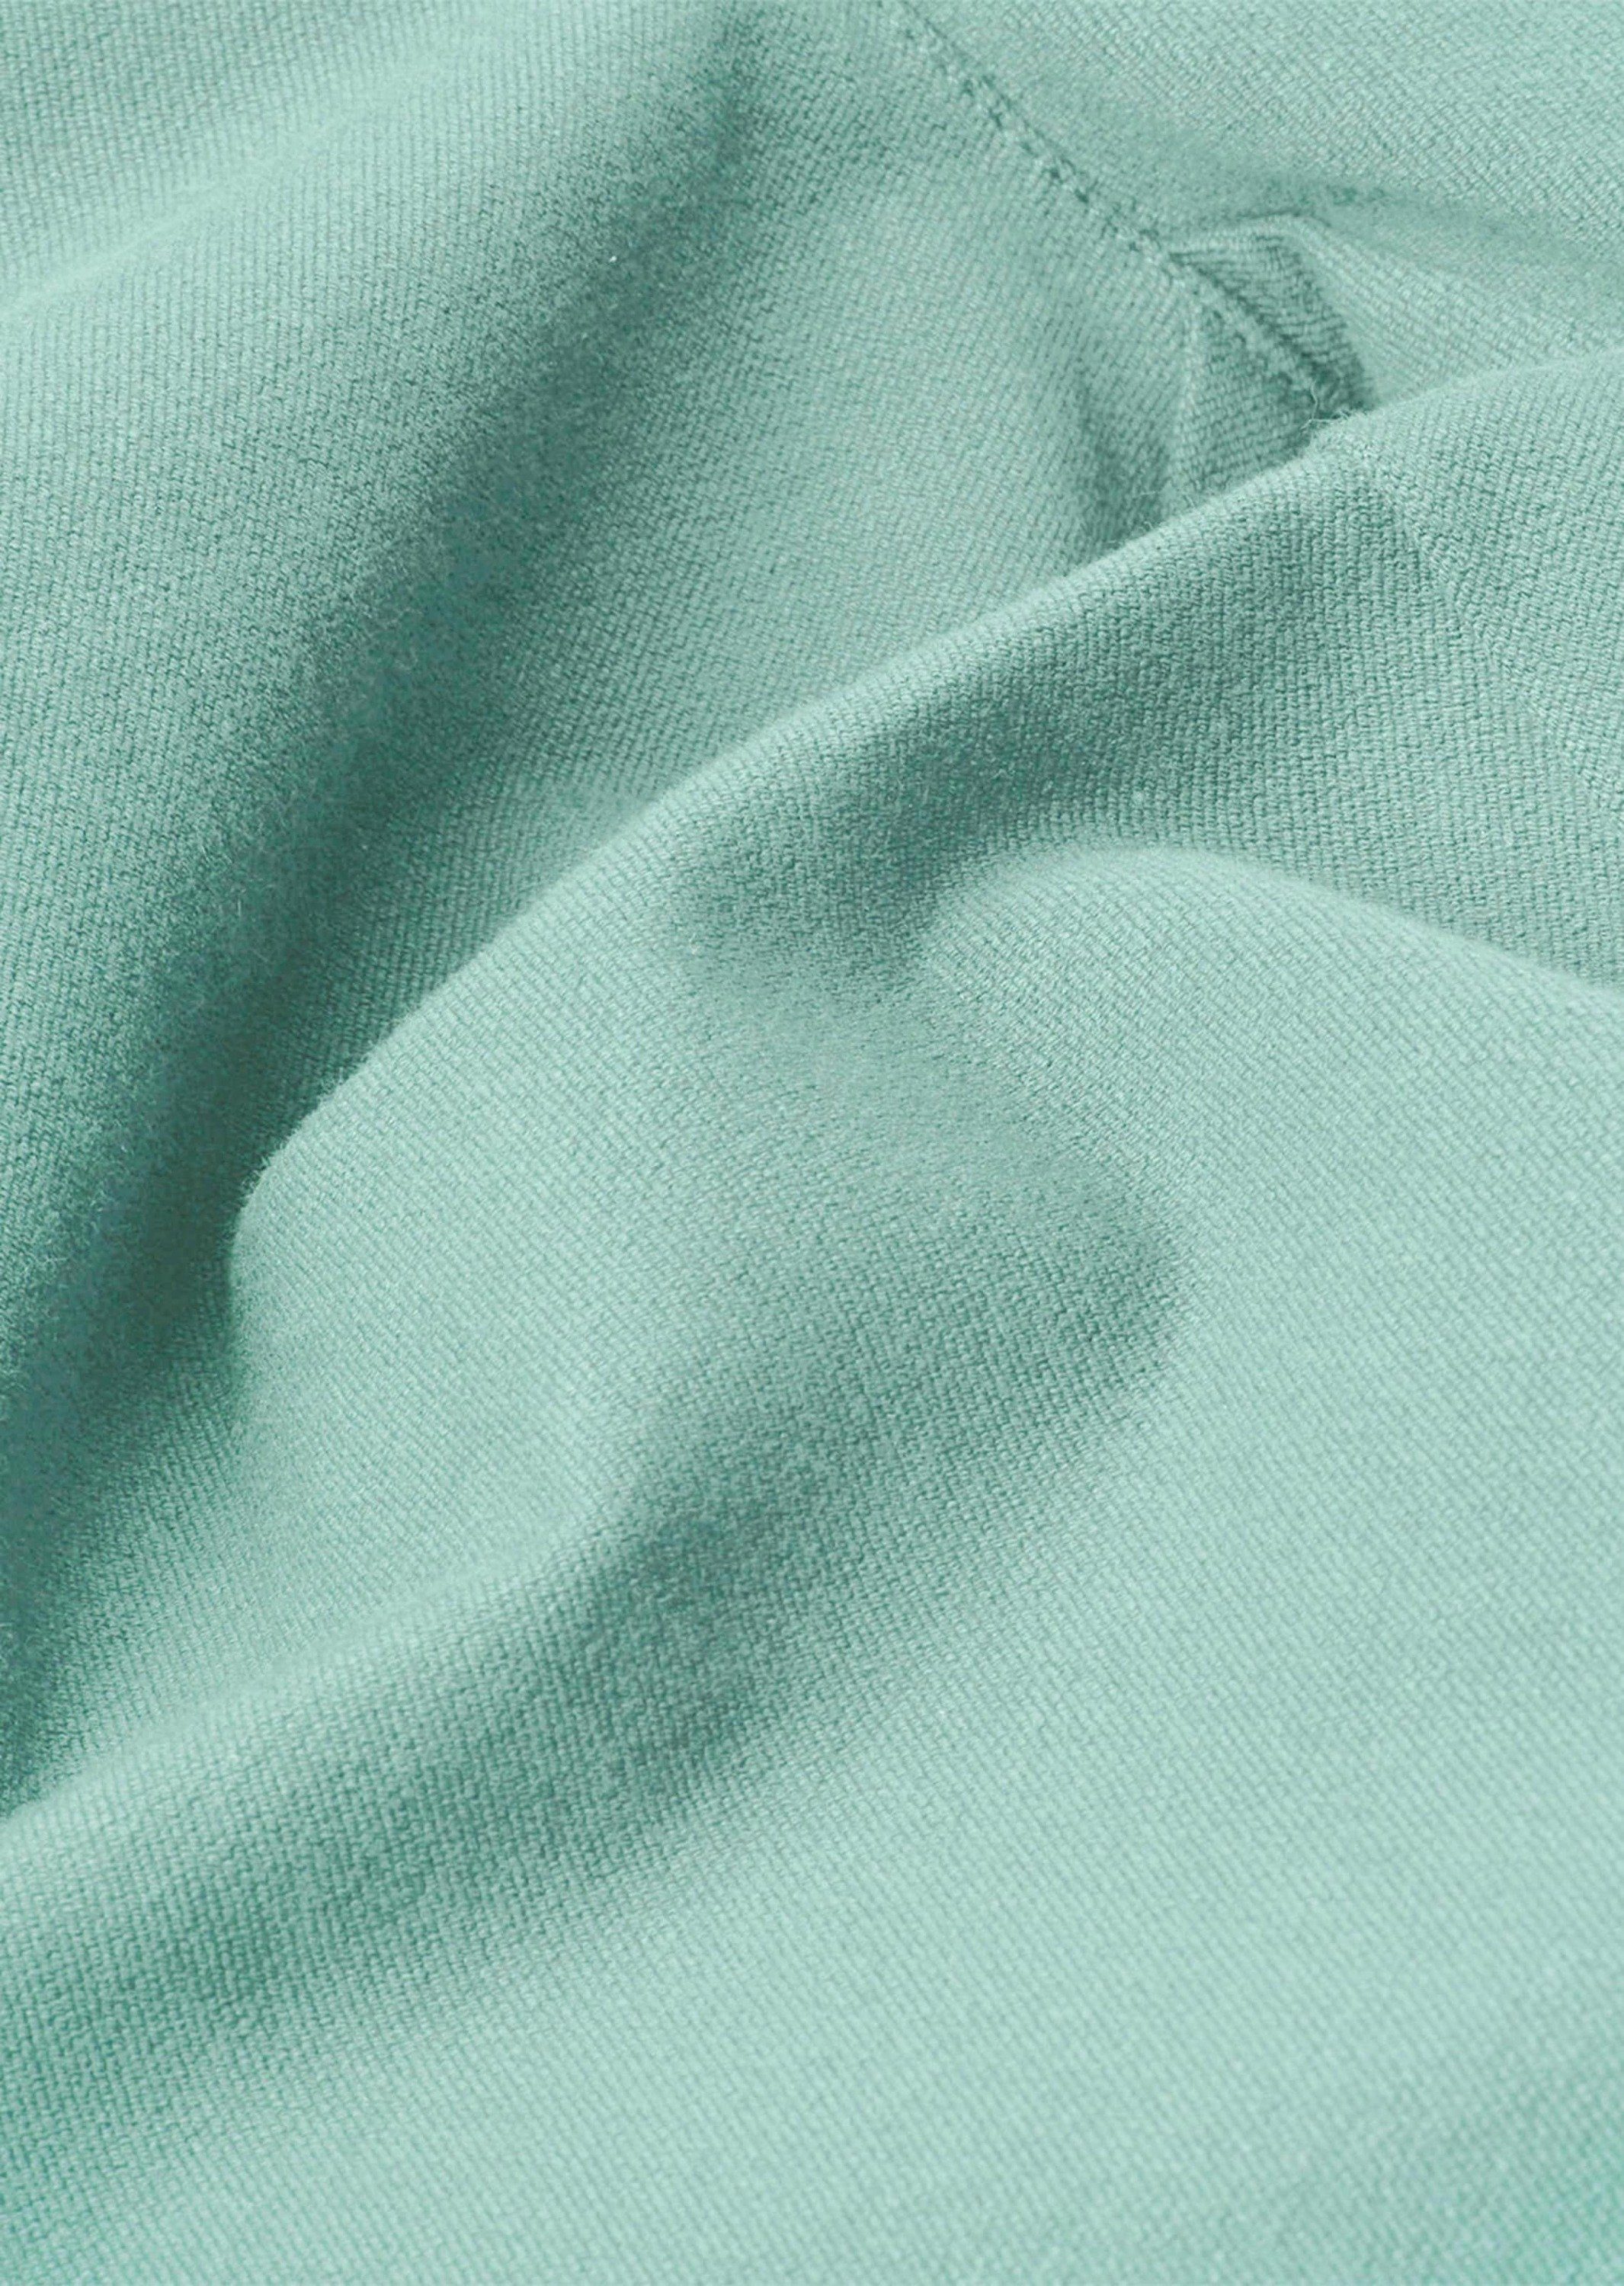 GOLDNER Schlupfhose mintgrün Kurzgröße: Baumwollschlupfhose Leichte LOUISA